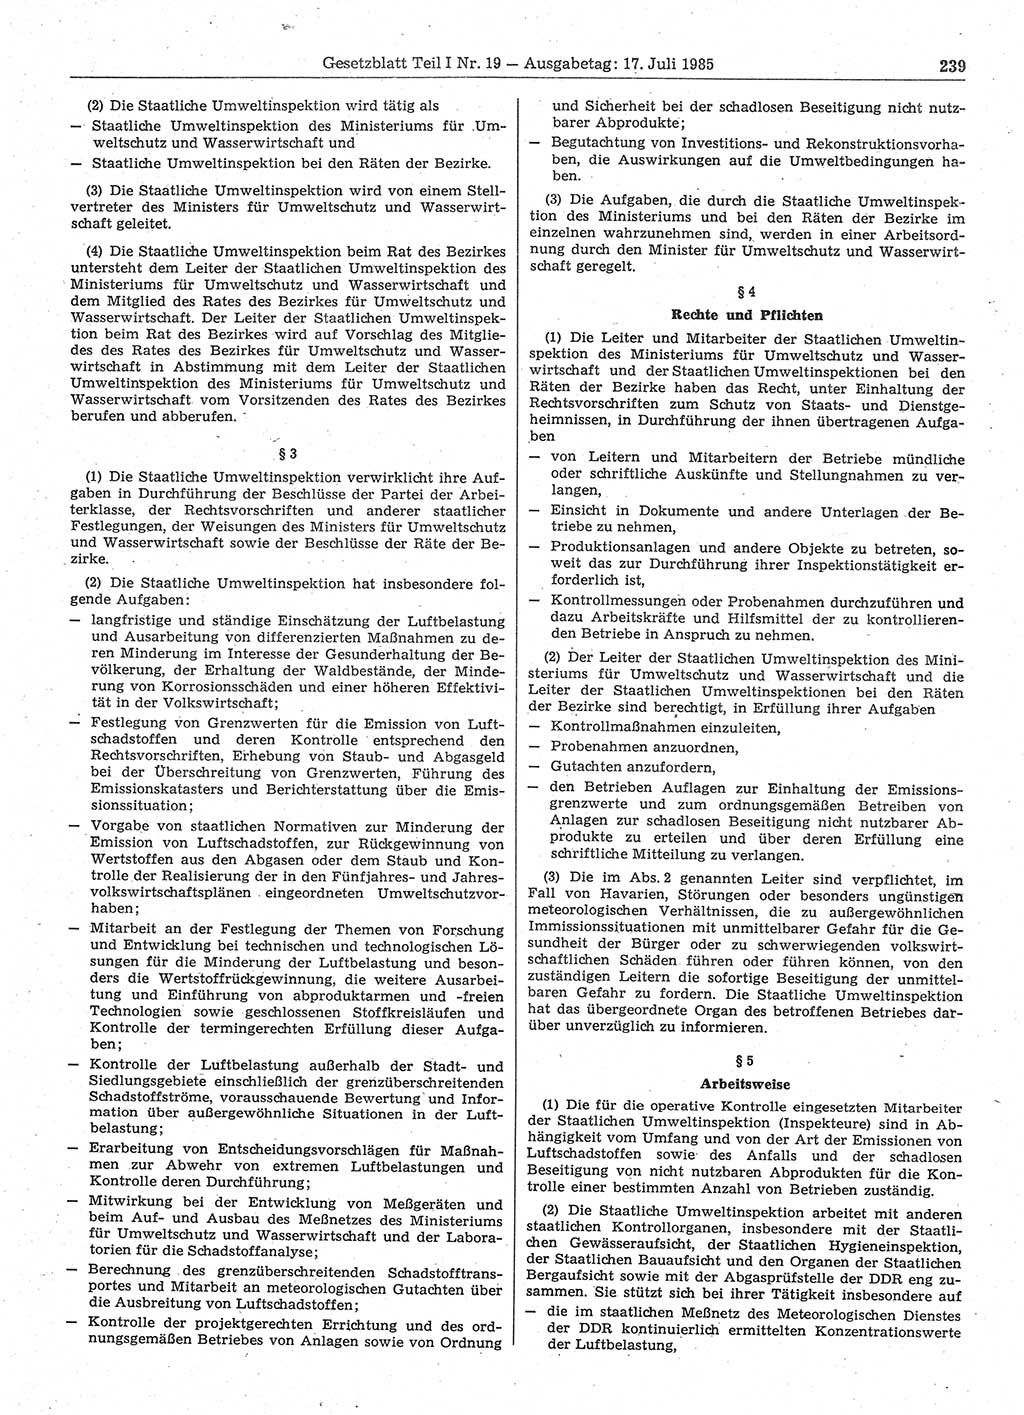 Gesetzblatt (GBl.) der Deutschen Demokratischen Republik (DDR) Teil Ⅰ 1985, Seite 239 (GBl. DDR Ⅰ 1985, S. 239)